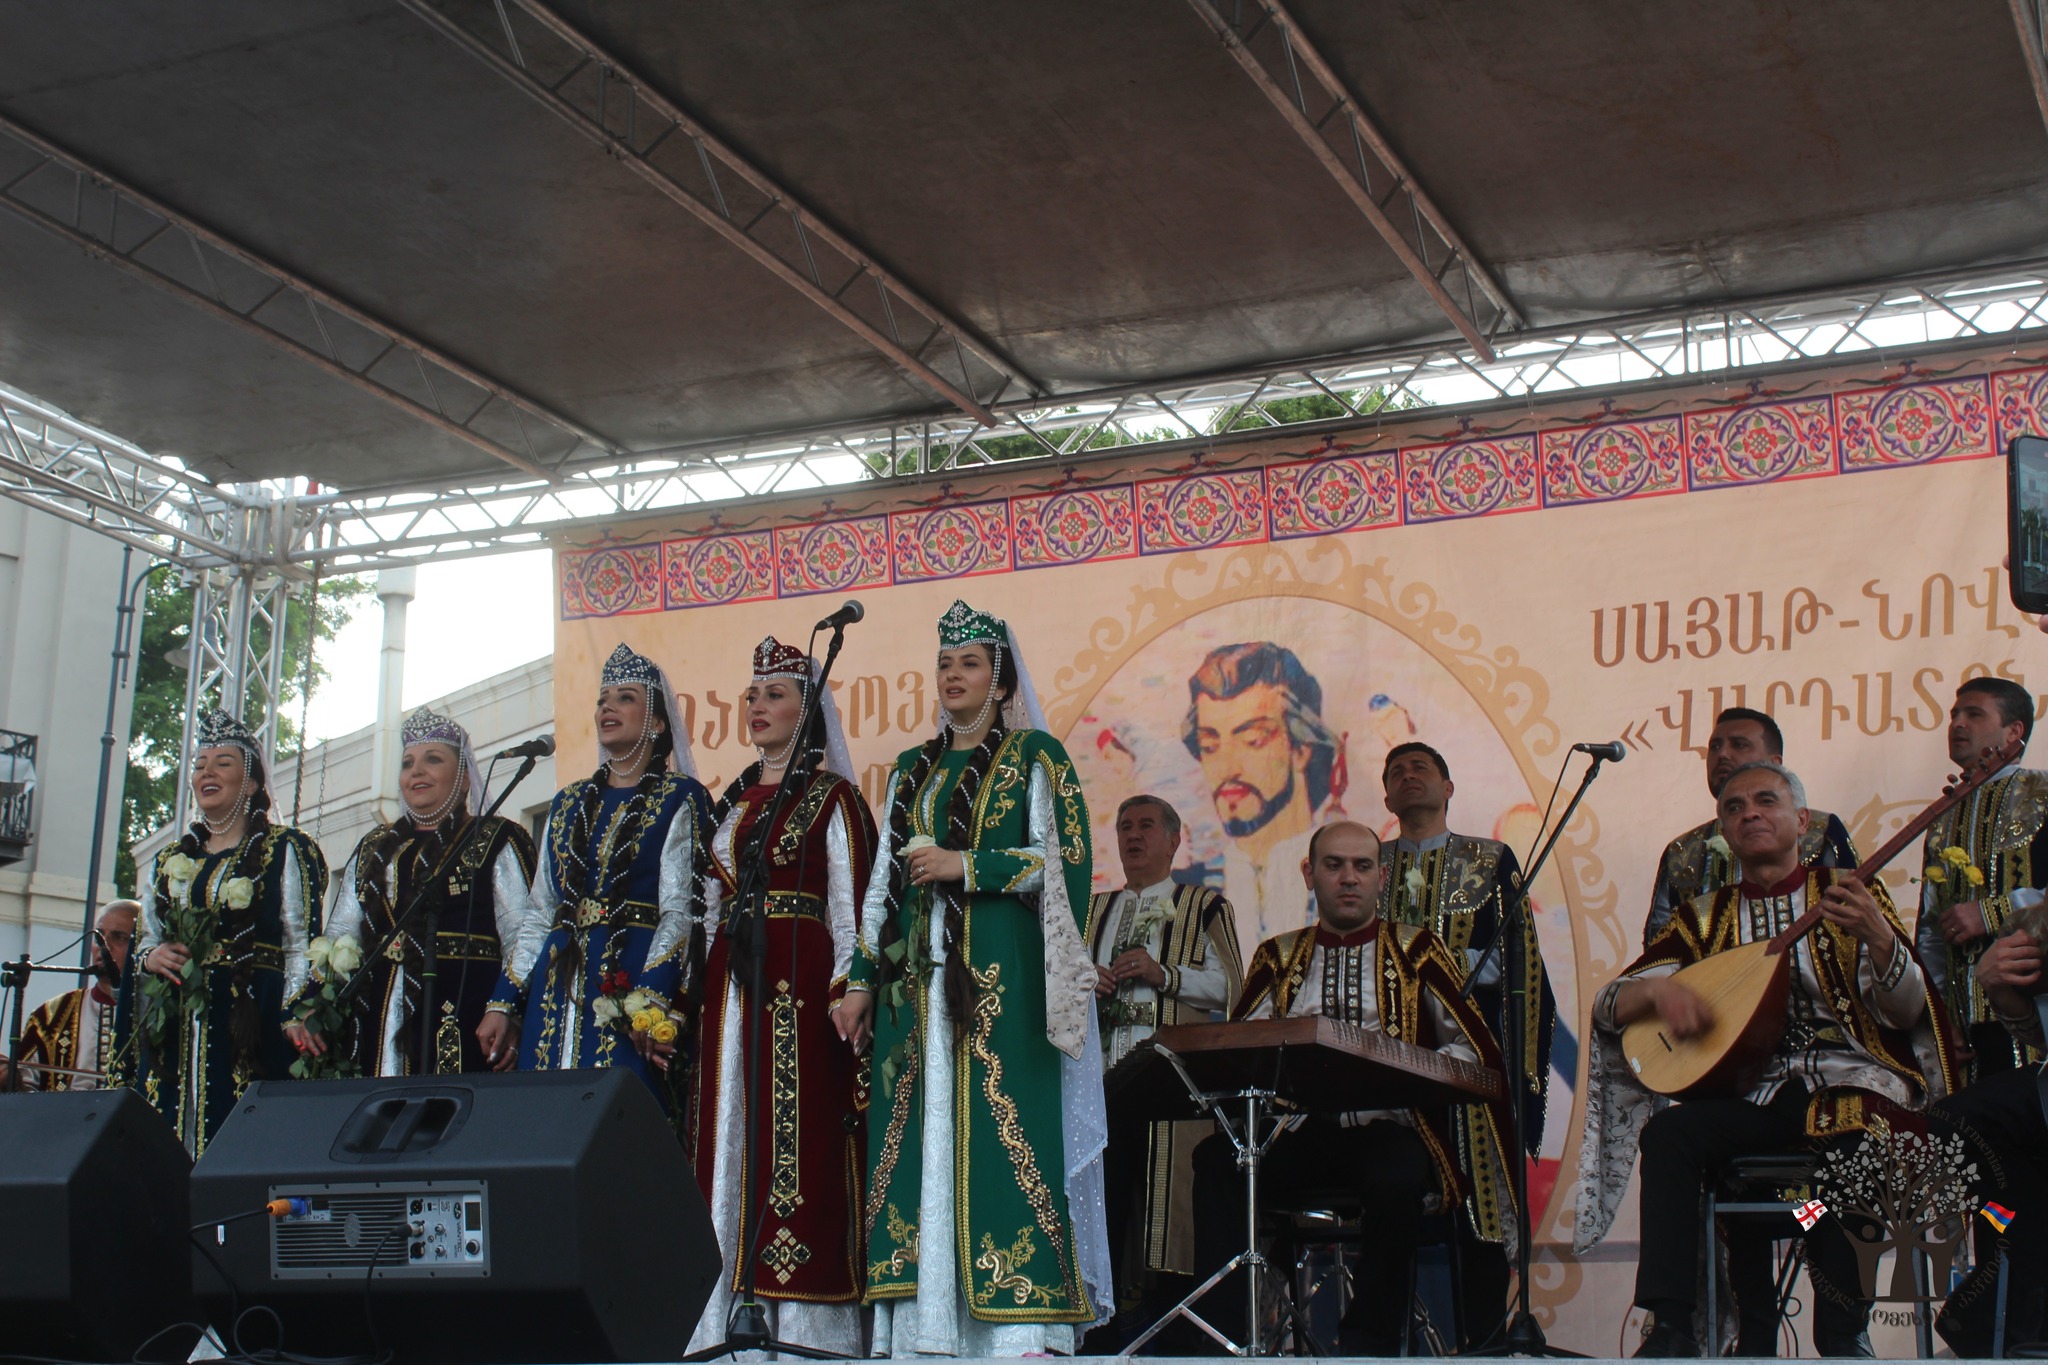 Մայիսի 28-ին Թբիլիսիում նշվել է Սայաթ-Նովային նվիրված և արդեն ավանդական դարձած Վարդատոնը